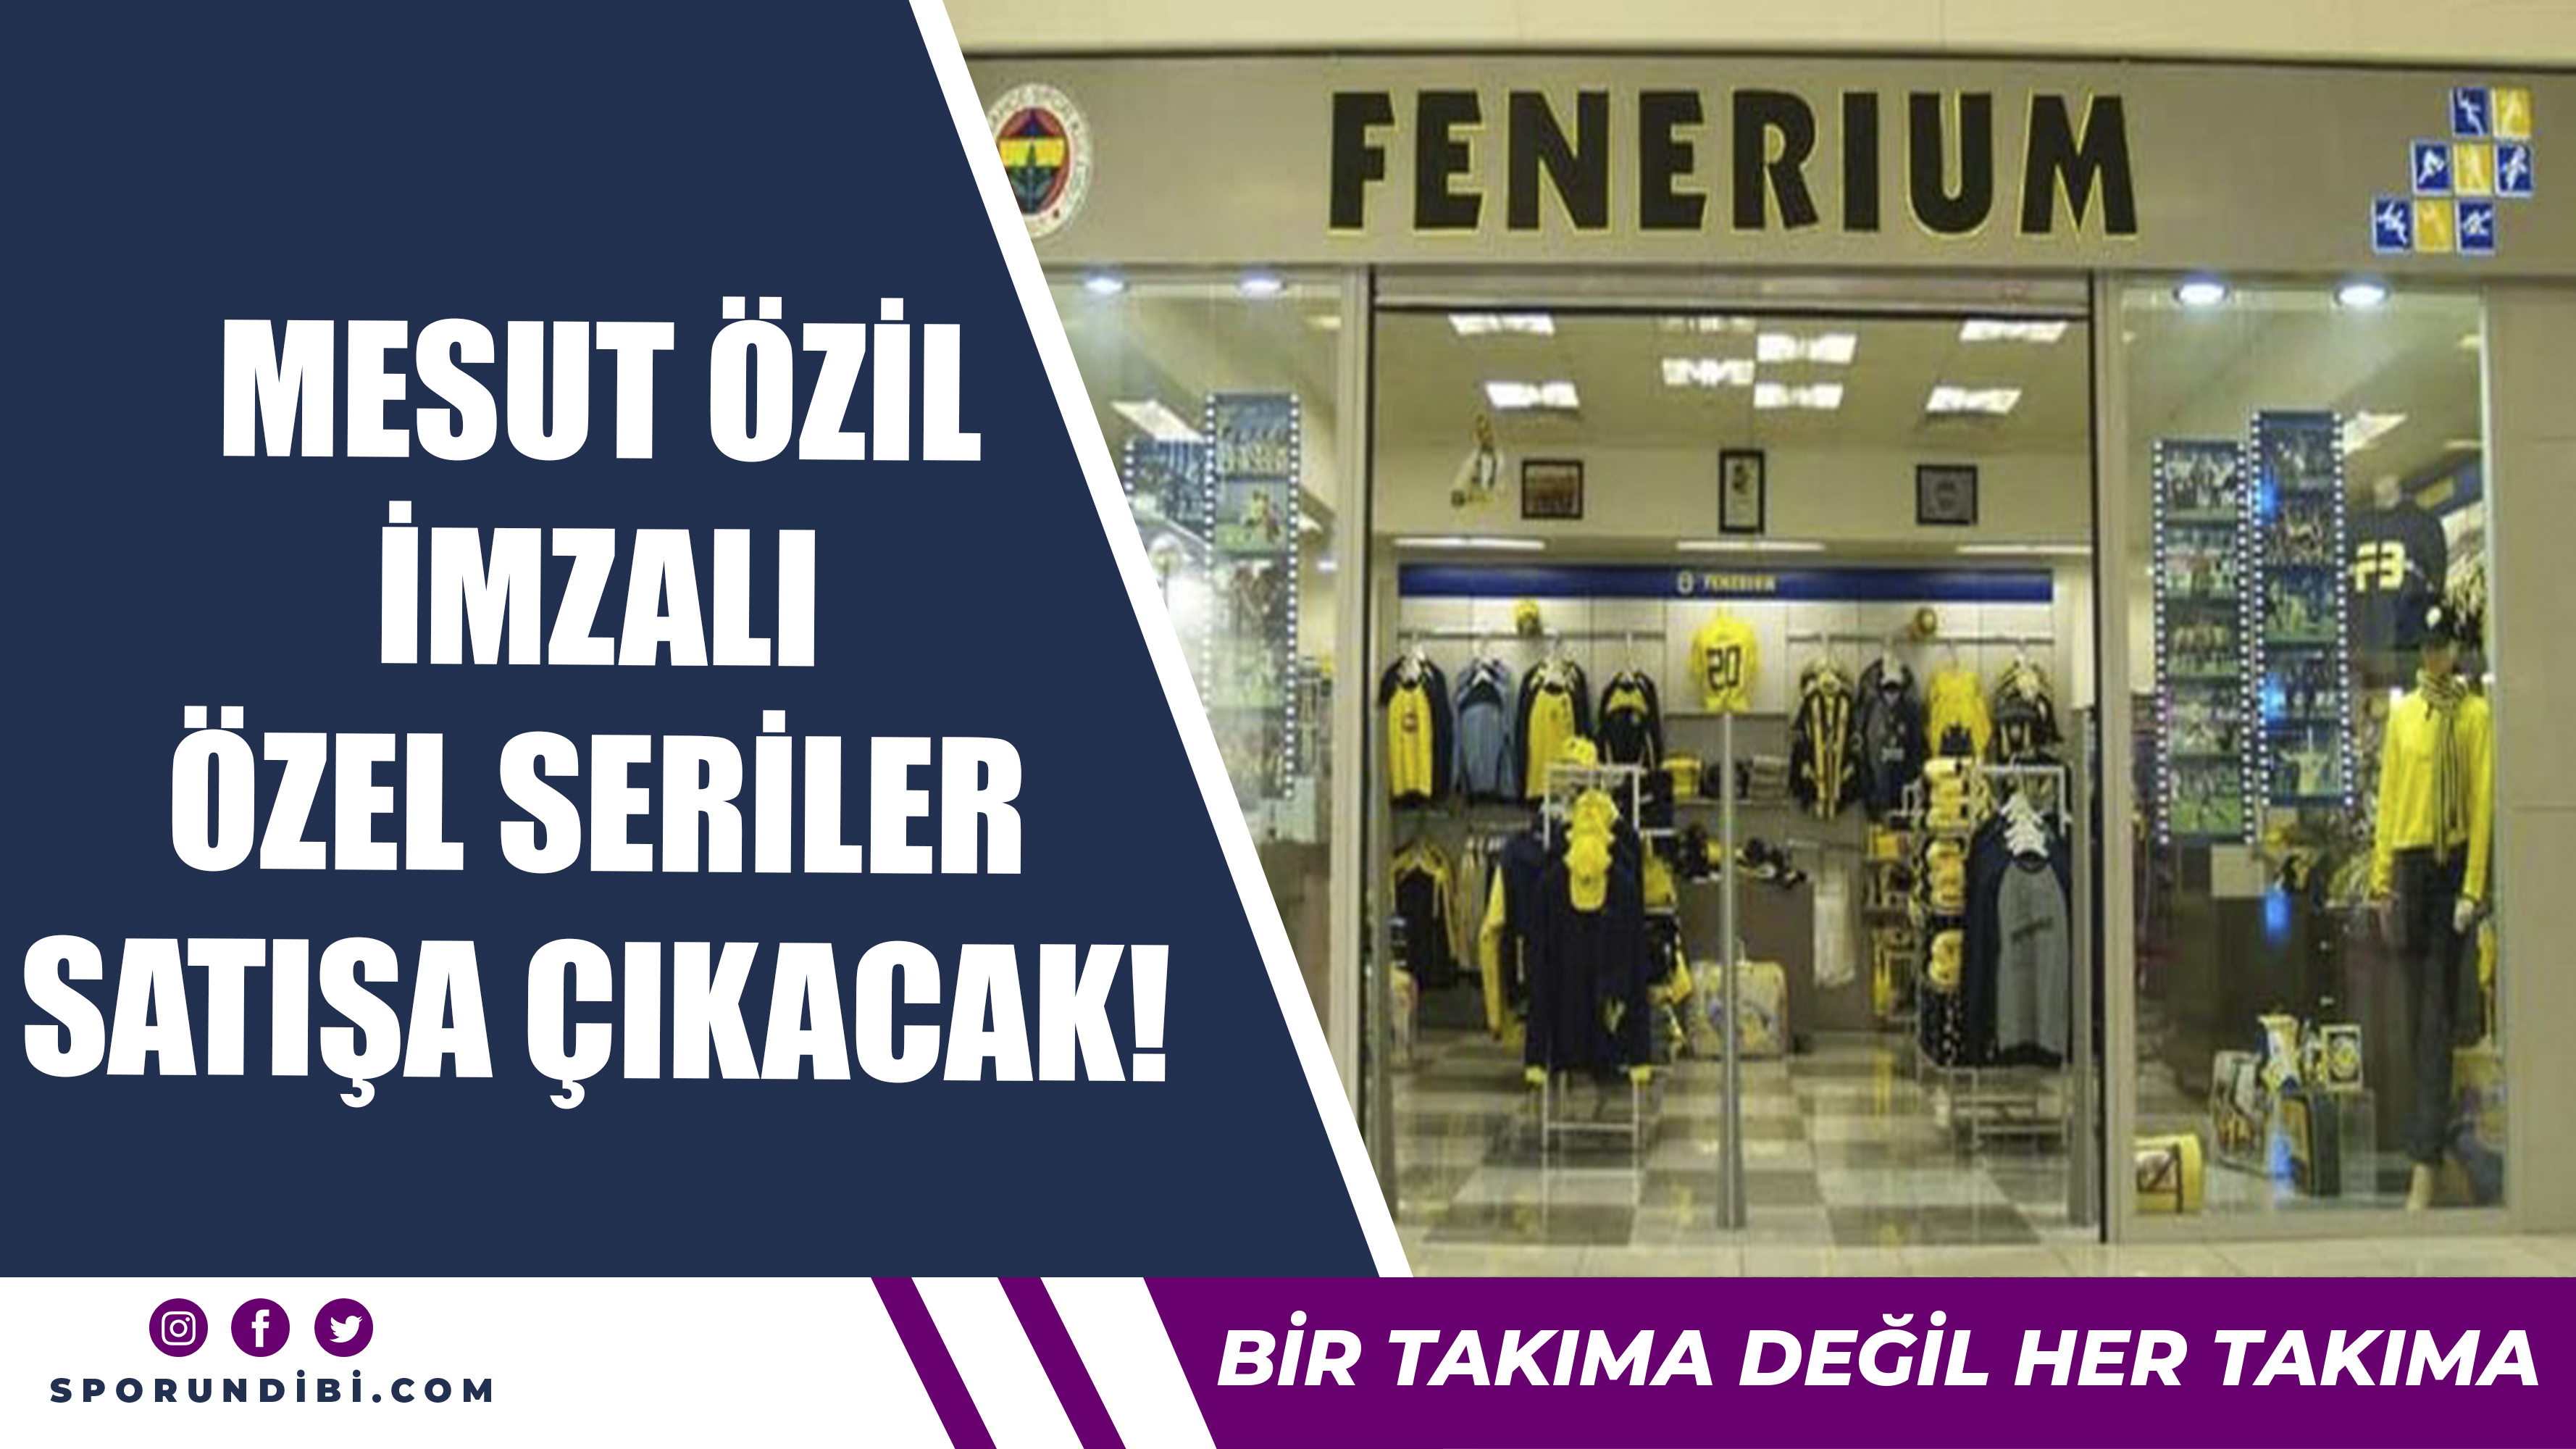 Fenerbahçe Mesut Özil İmzalı Özel Serileri Satışa Çıkartacak!